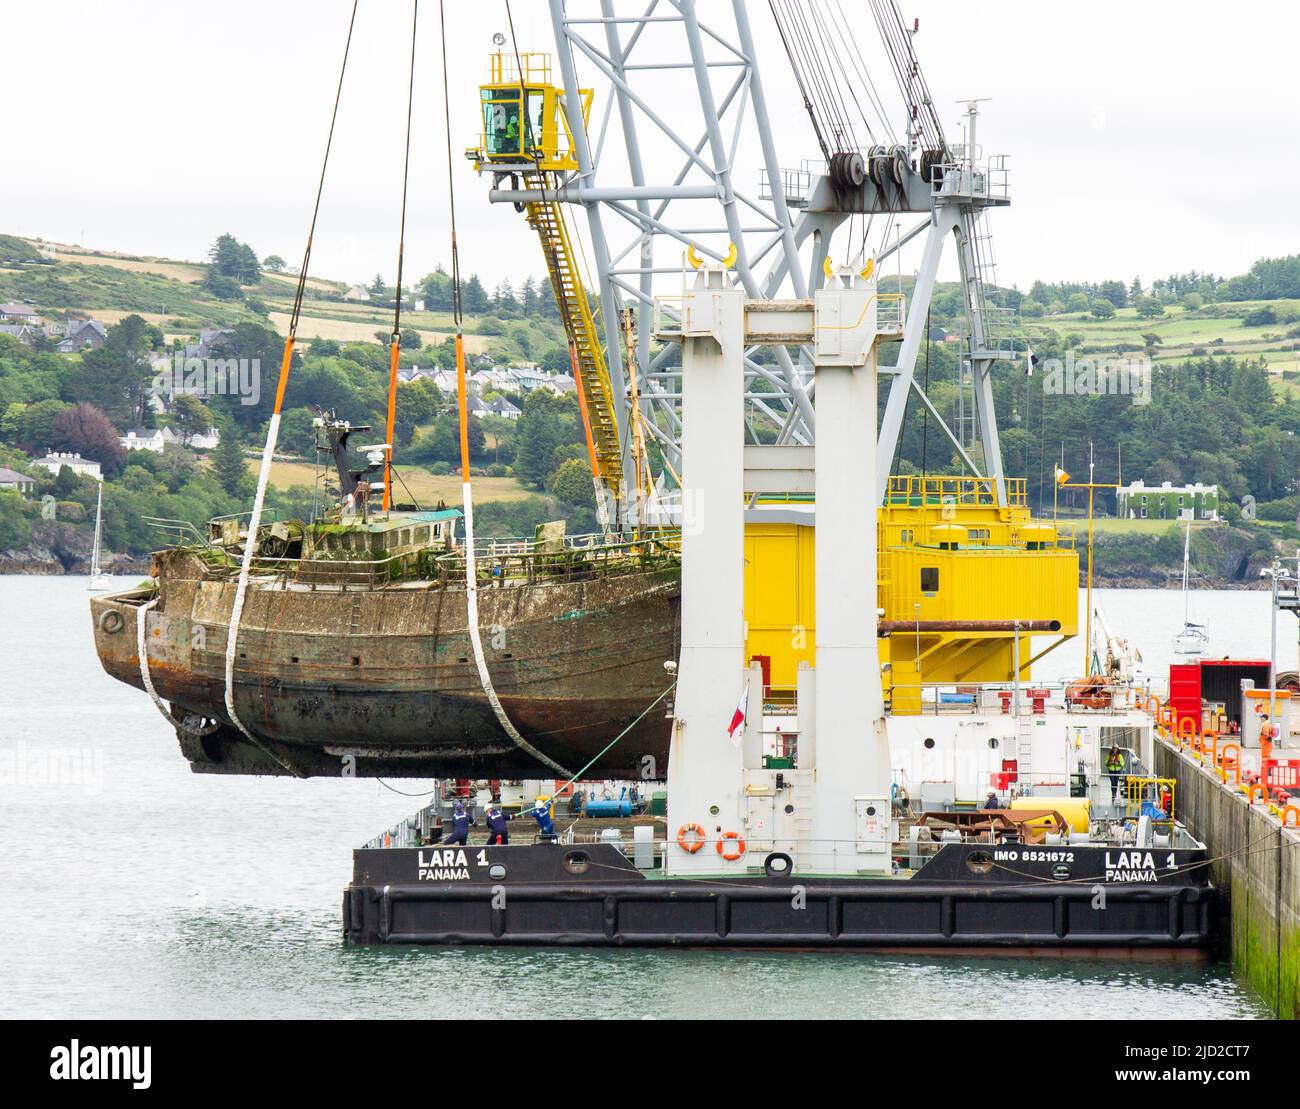 El naufragio se eleva sobre el muelle de la grúa flotante Lara 1, Union Hall, West Cork, Irlanda Foto de stock